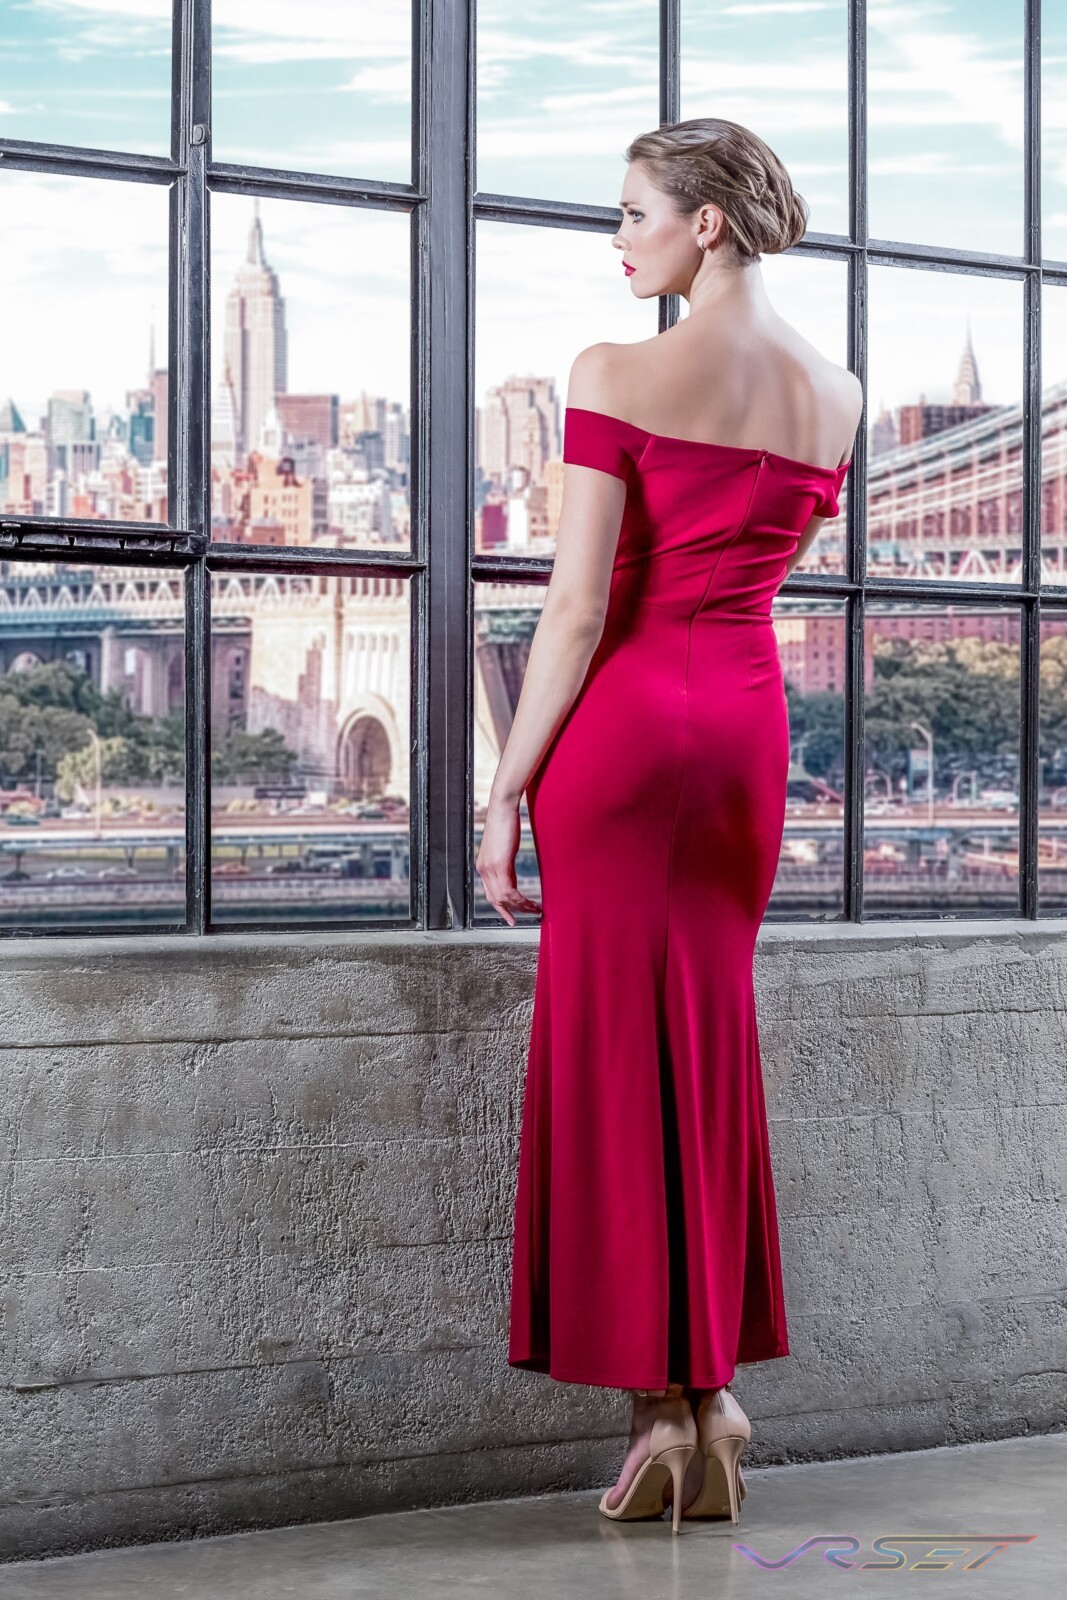 Model Anna Vasiltsova Red Off Shoulder Dress Designer Bonnie Kim Zoe Couture Studio Catalog Fashion Photography NY